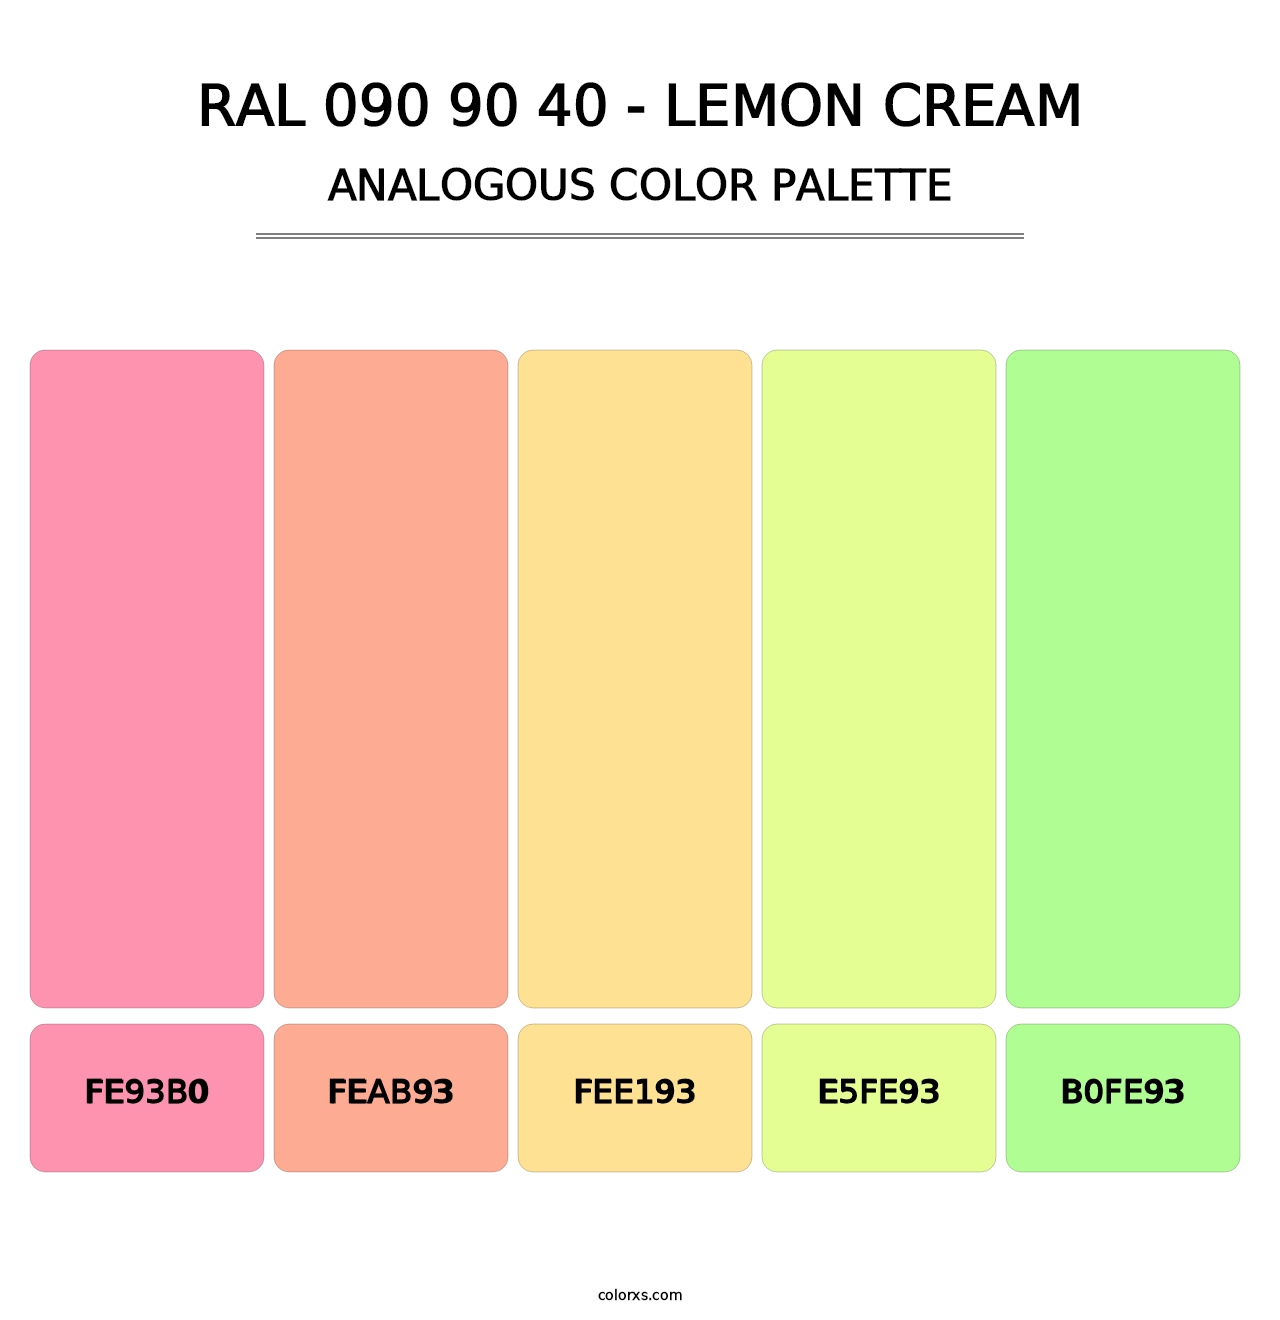 RAL 090 90 40 - Lemon Cream - Analogous Color Palette